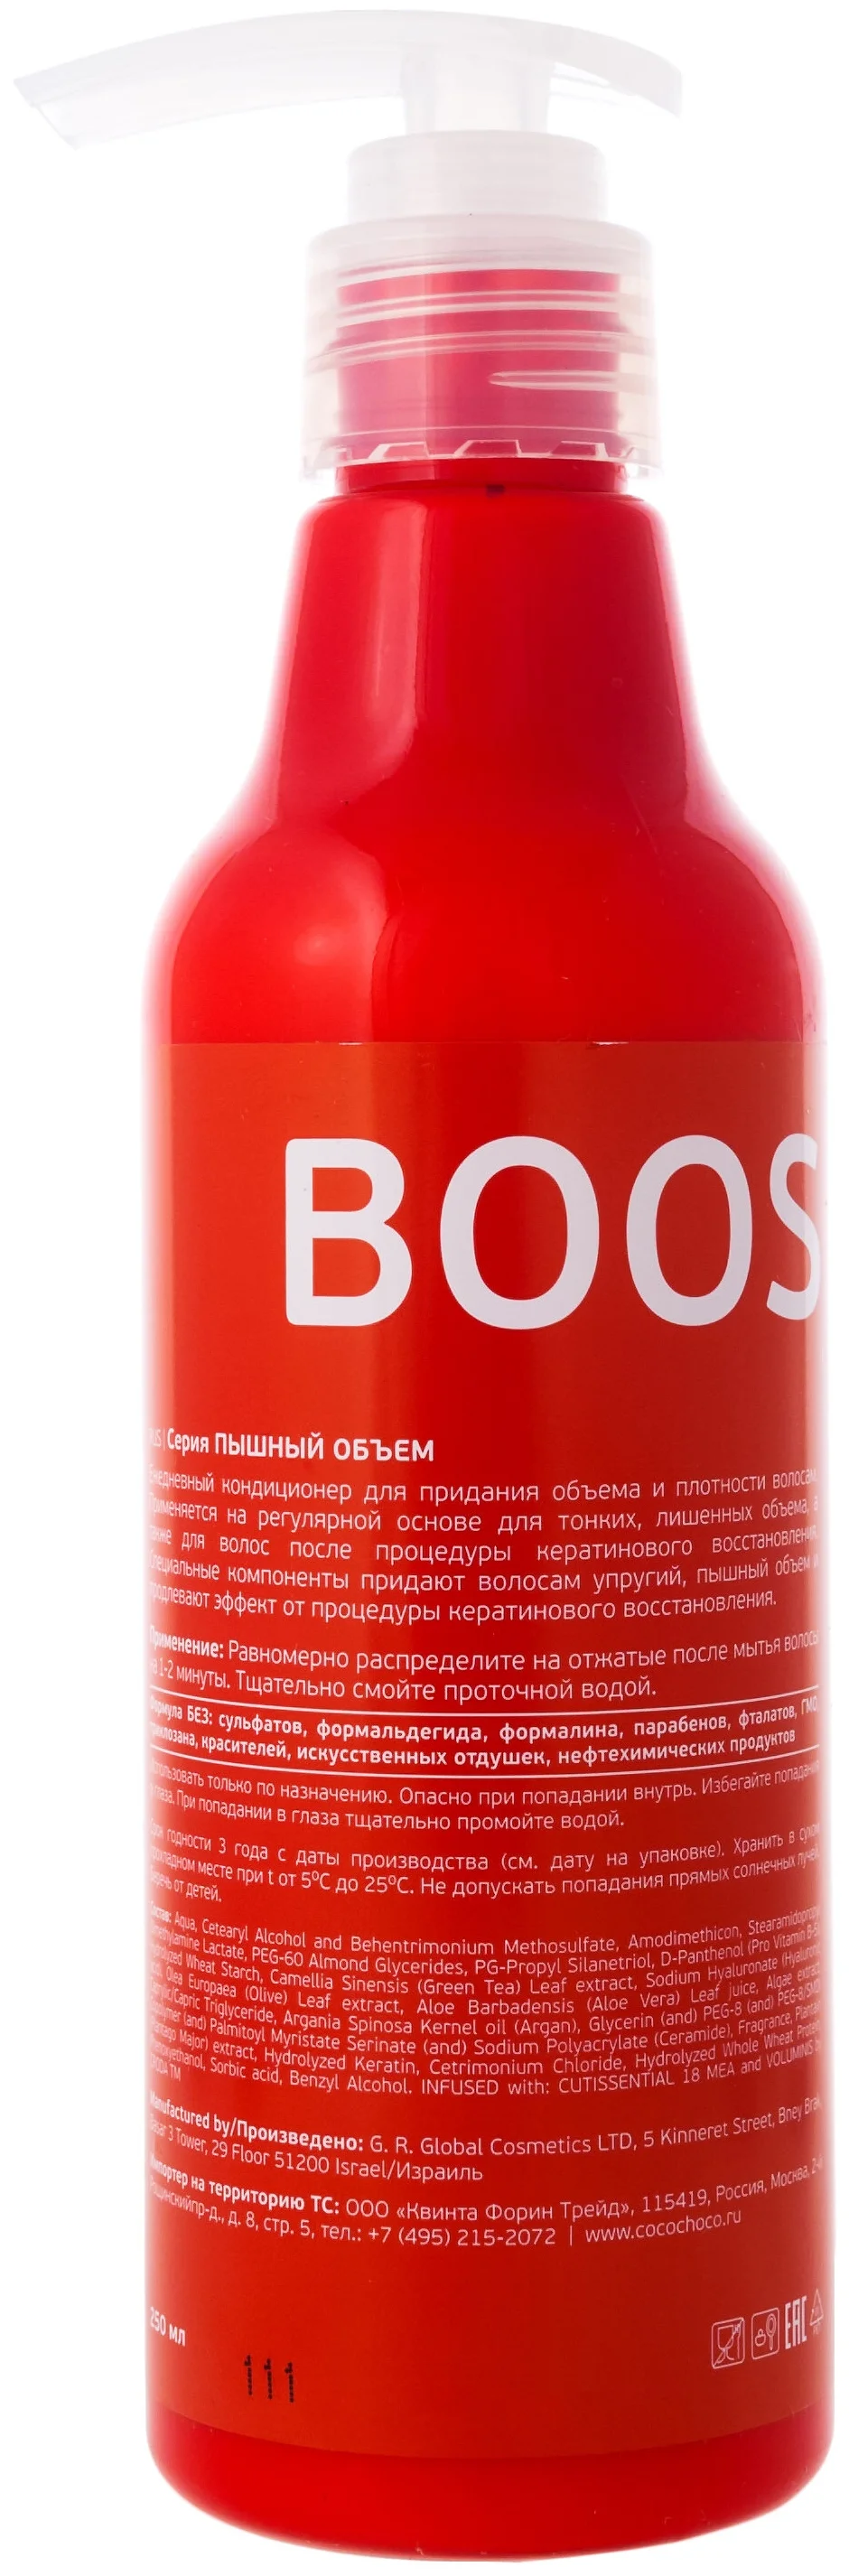 CocoChoco Boost-up для придания объема волосам - для ломких, тонких и поврежденных